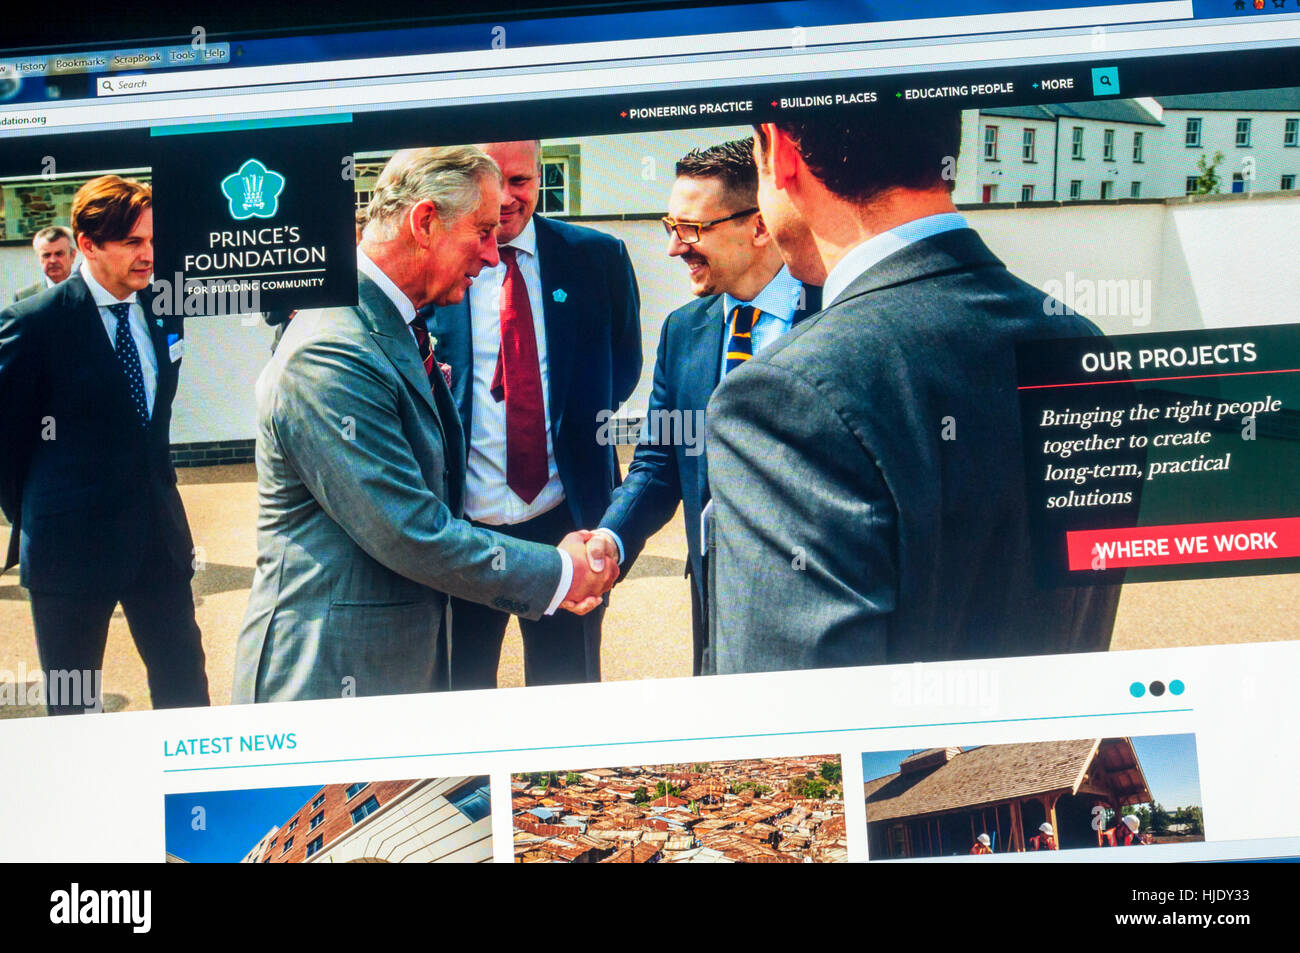 Il sito web home page del Principe della Fondazione per la costruzione di comunità. Il supporto del Principe di Galles opinioni sulla pianificazione urbana e lo sviluppo. Foto Stock